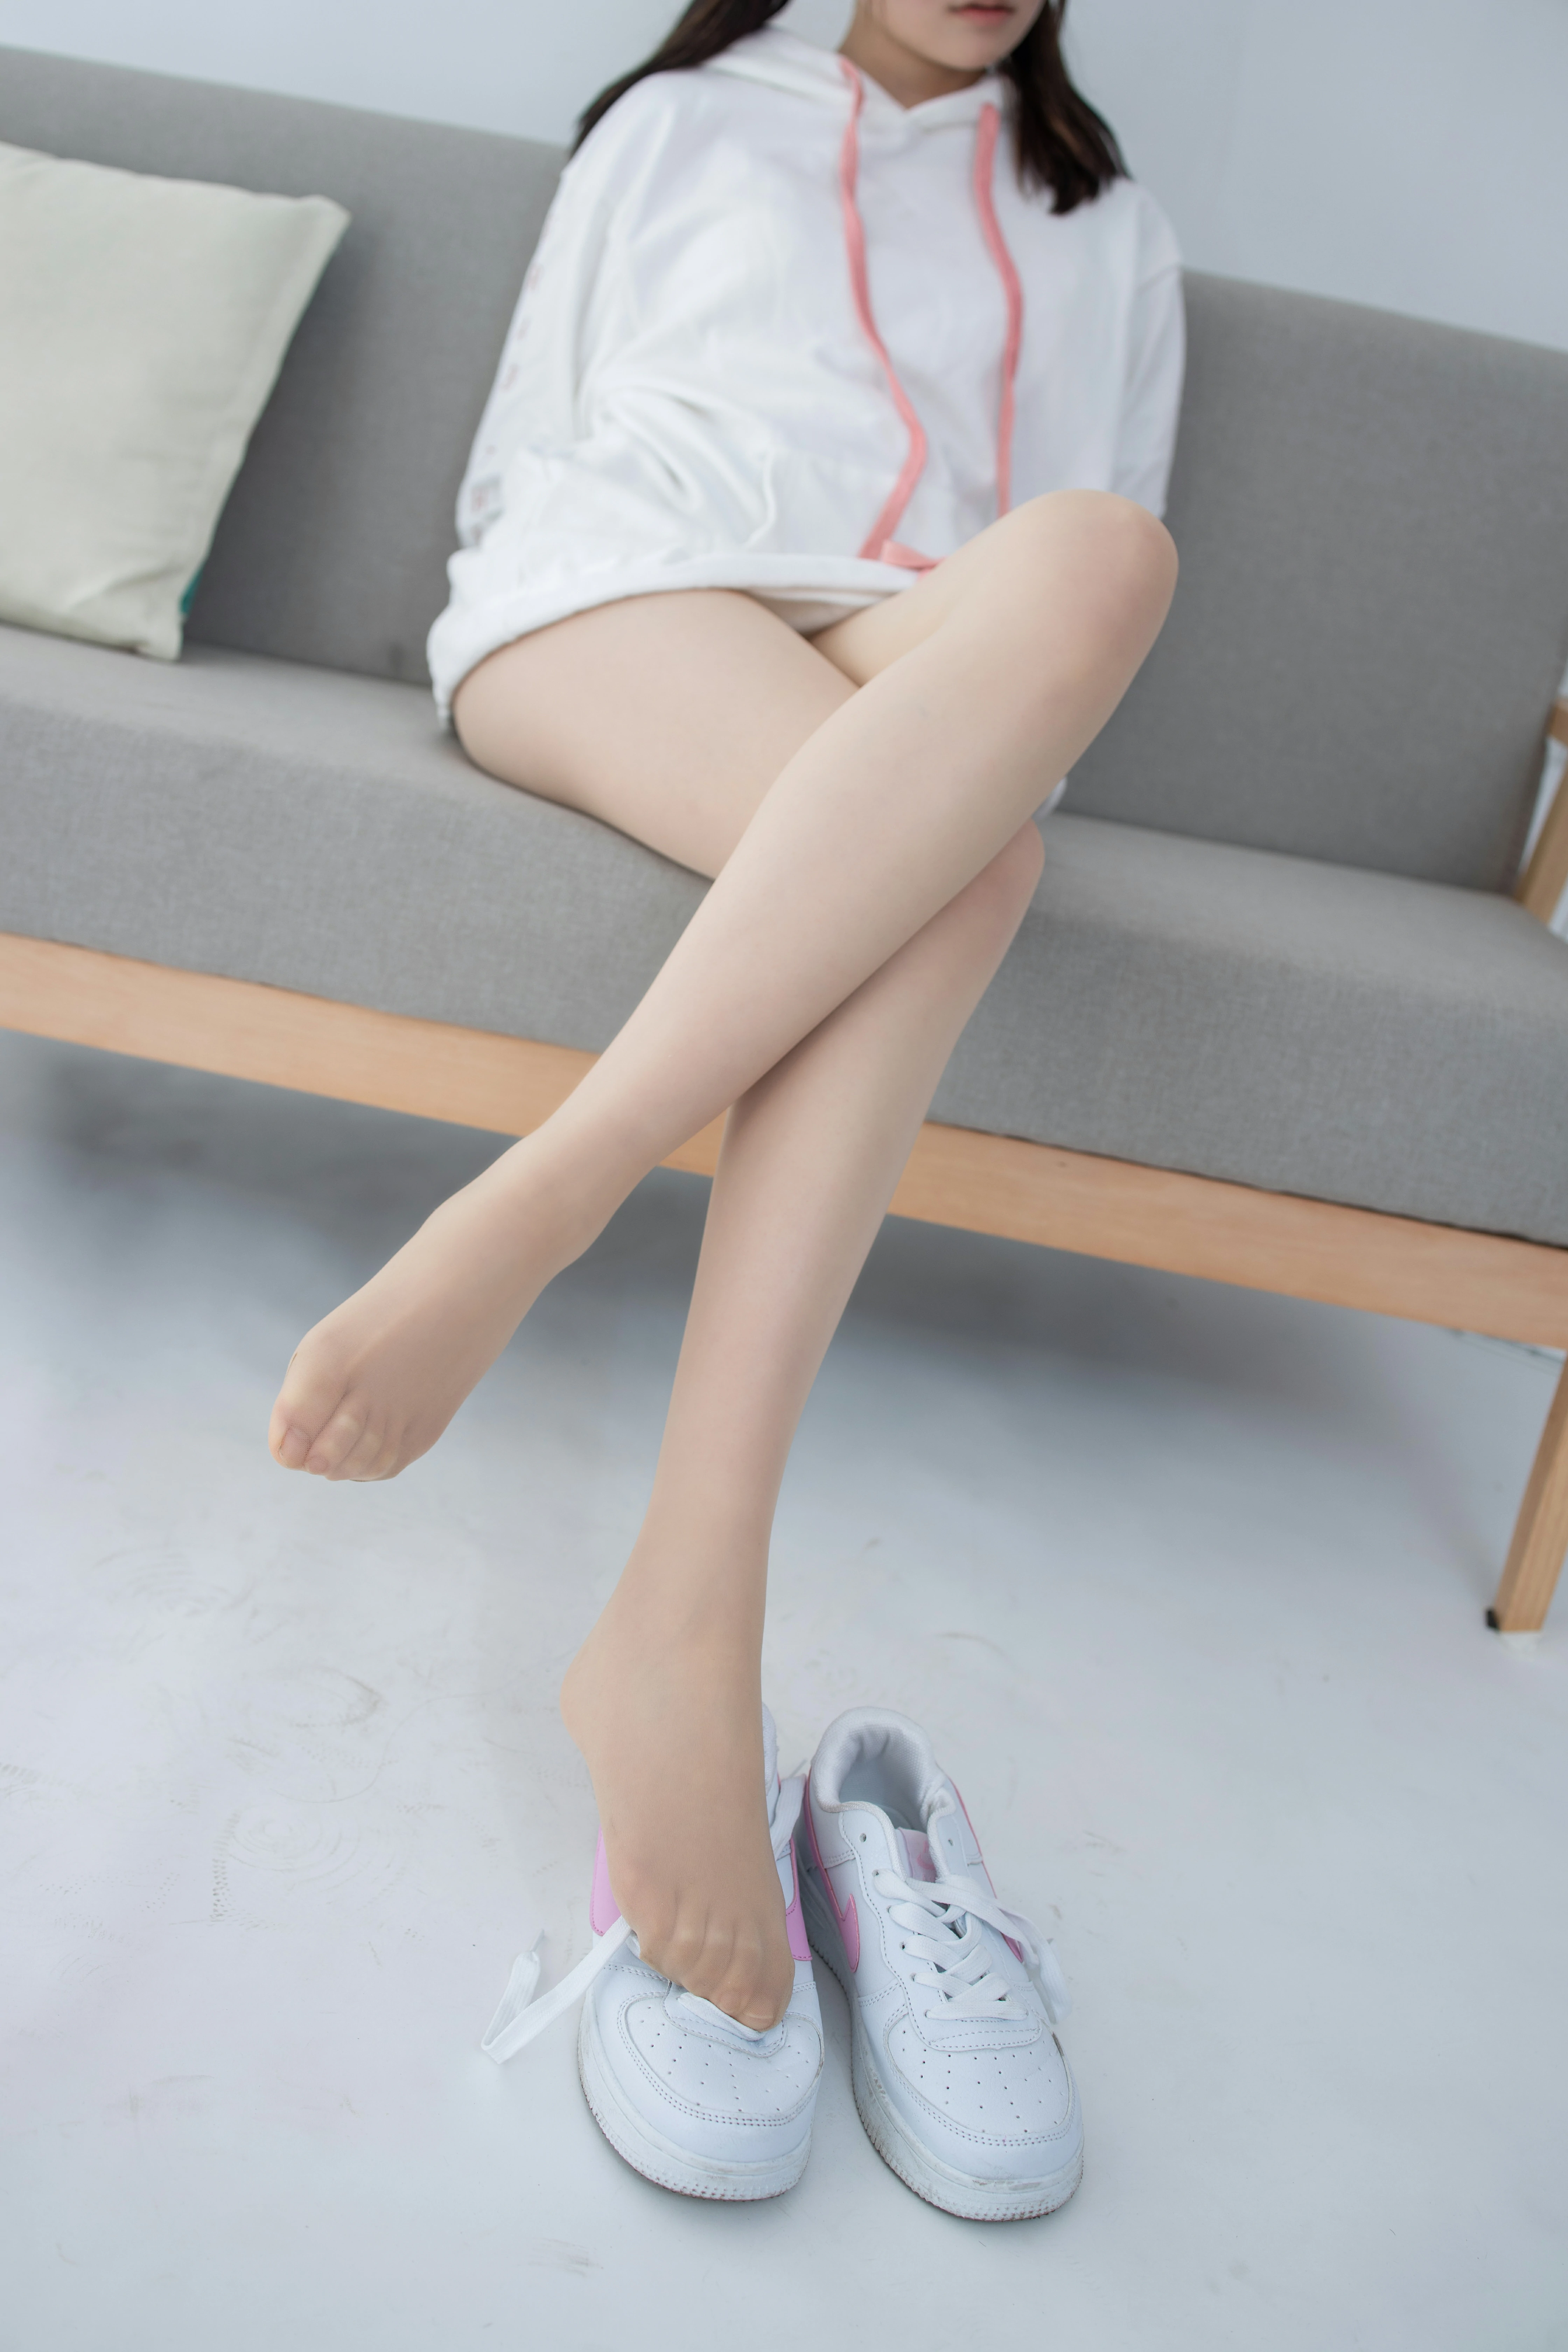 [森萝财团]JKFUN-百元系列2-1《运动鞋》13D肉丝 Aika 白色卫衣加肉色丝袜美腿性感私房写真集,